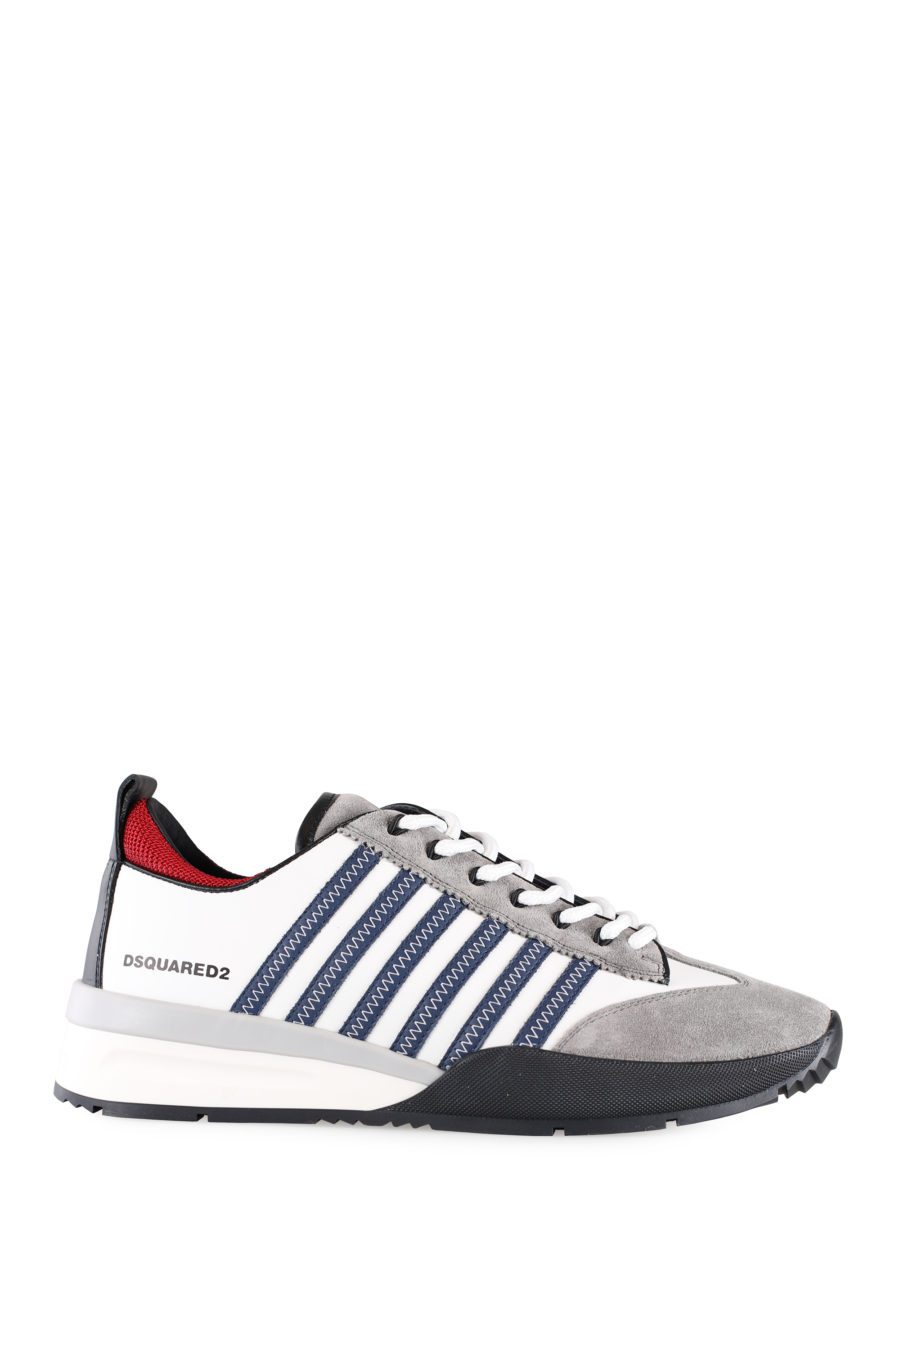 Zapatillas blancas y grises con líneas azules y detalle en rojo - IMG 0009